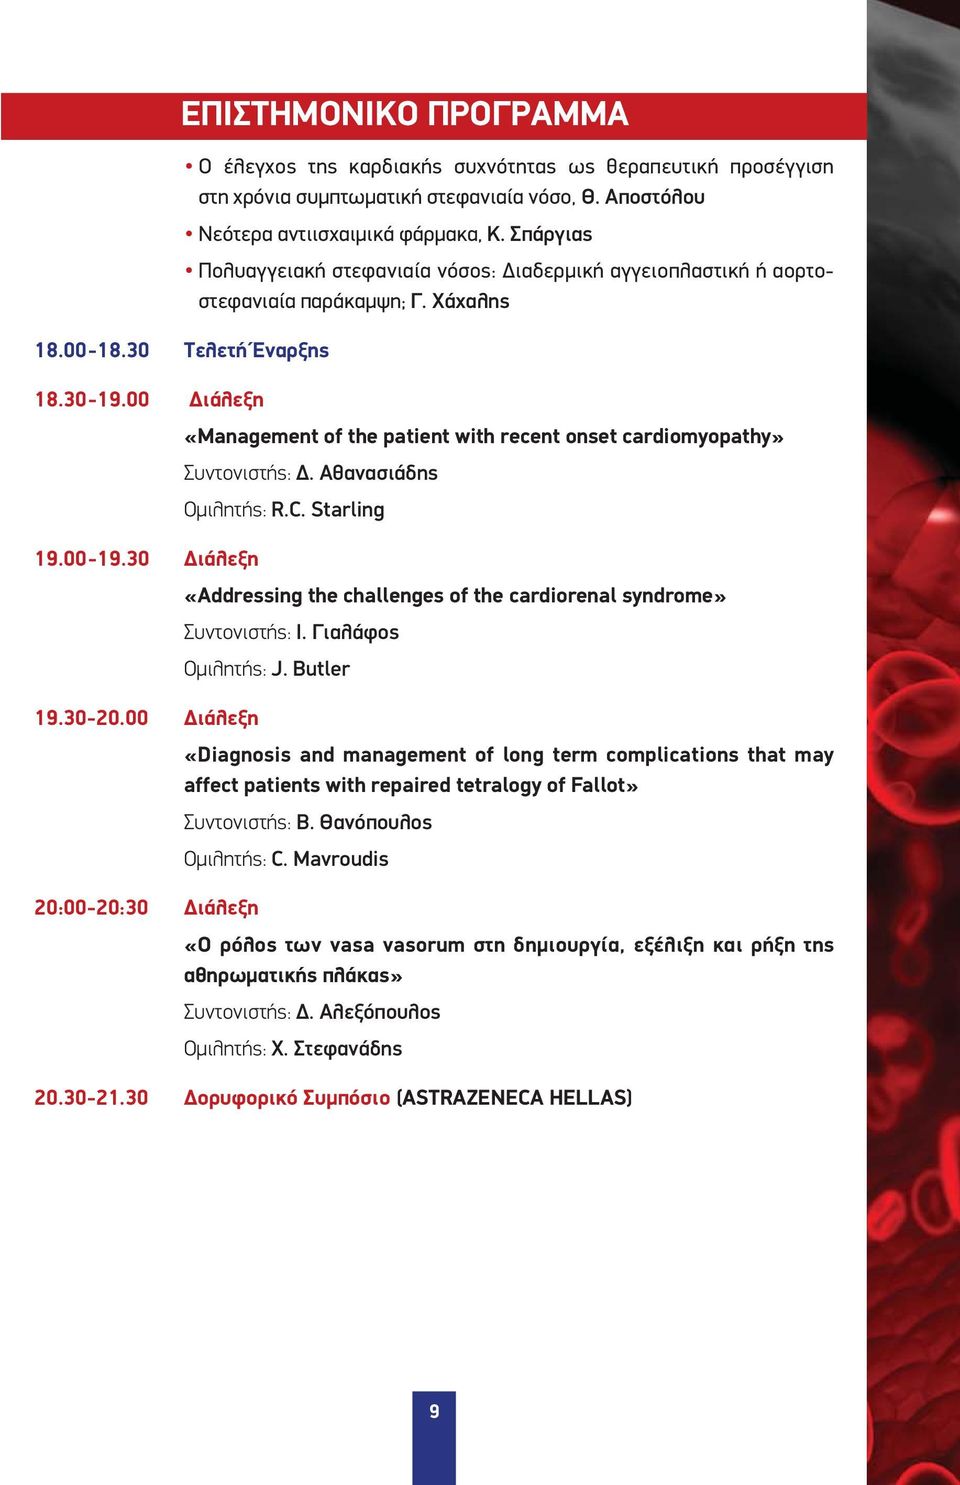 00 Διάλεξη «Management of the patient with recent onset cardiomyopathy» Συντονιστής: Δ. Αθανασιάδης Ομιλητής: R.C. Starling 19.00-19.30 Διάλεξη 19.30-20.